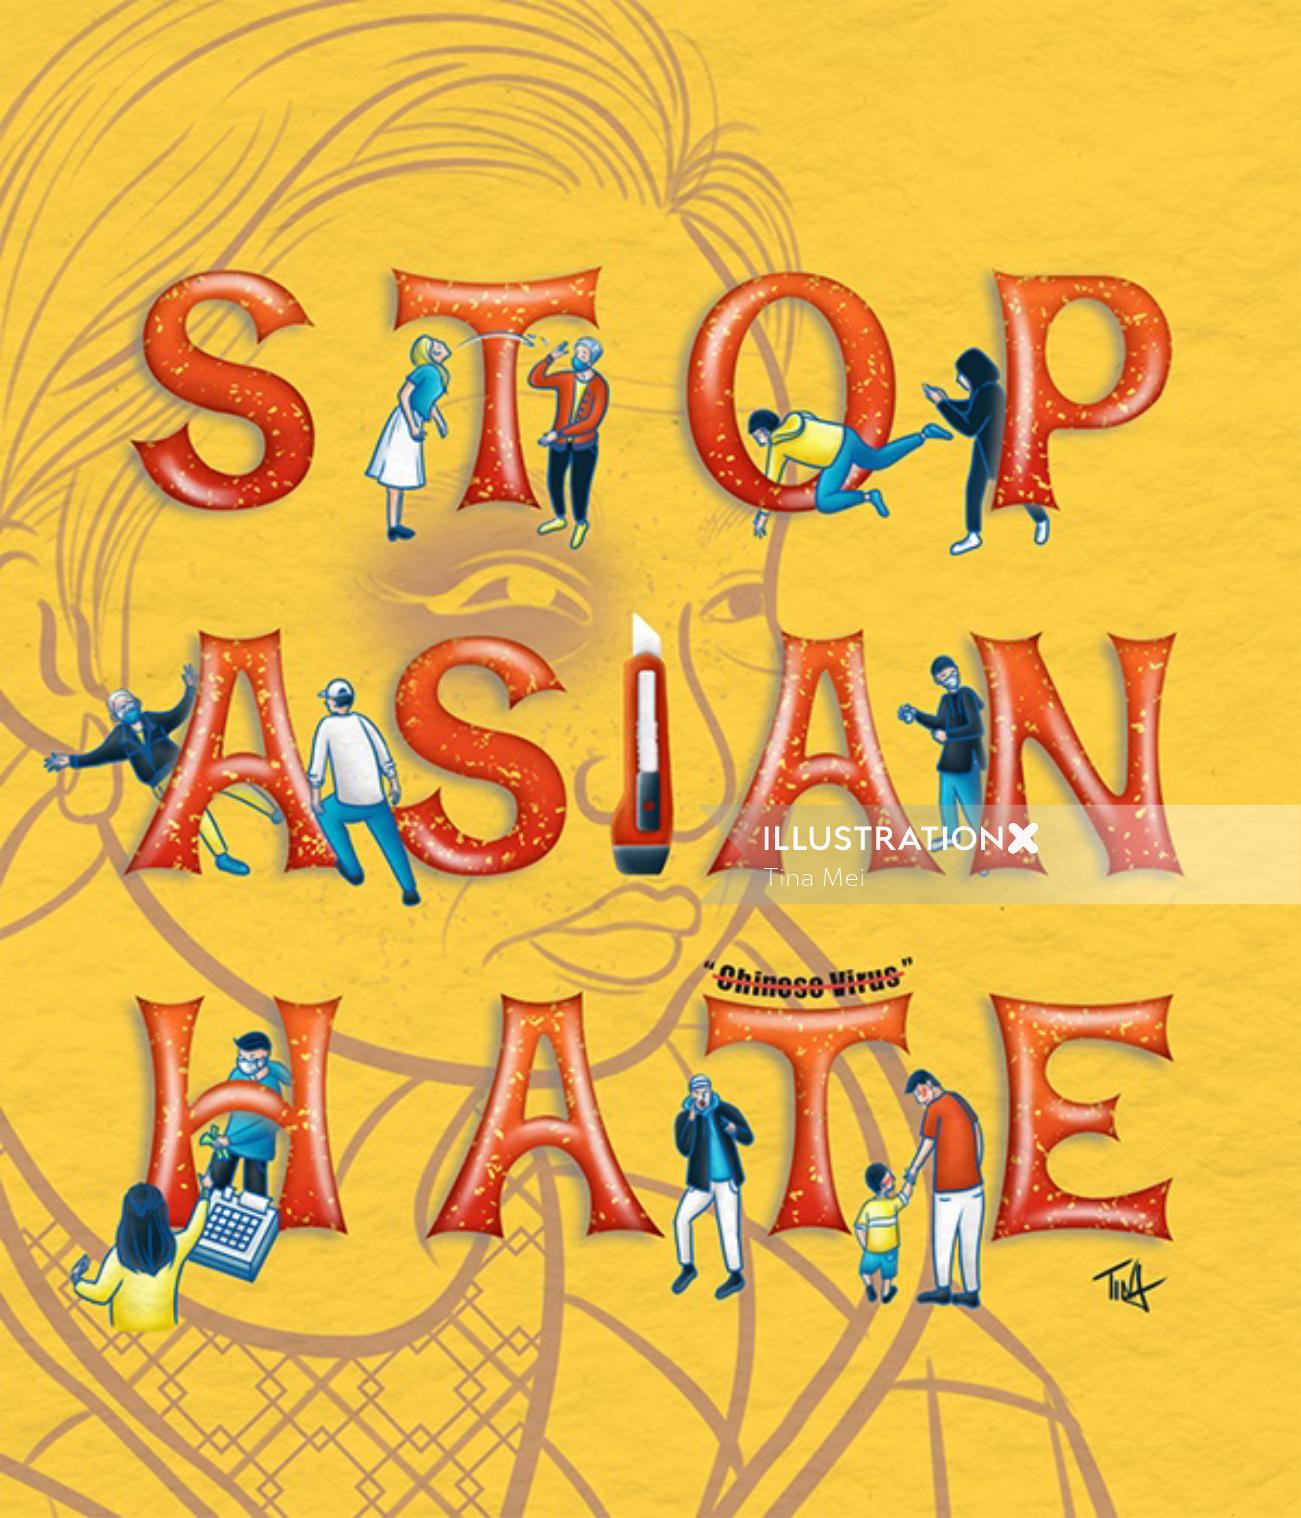 Pare de cartazes políticos de ódio asiático